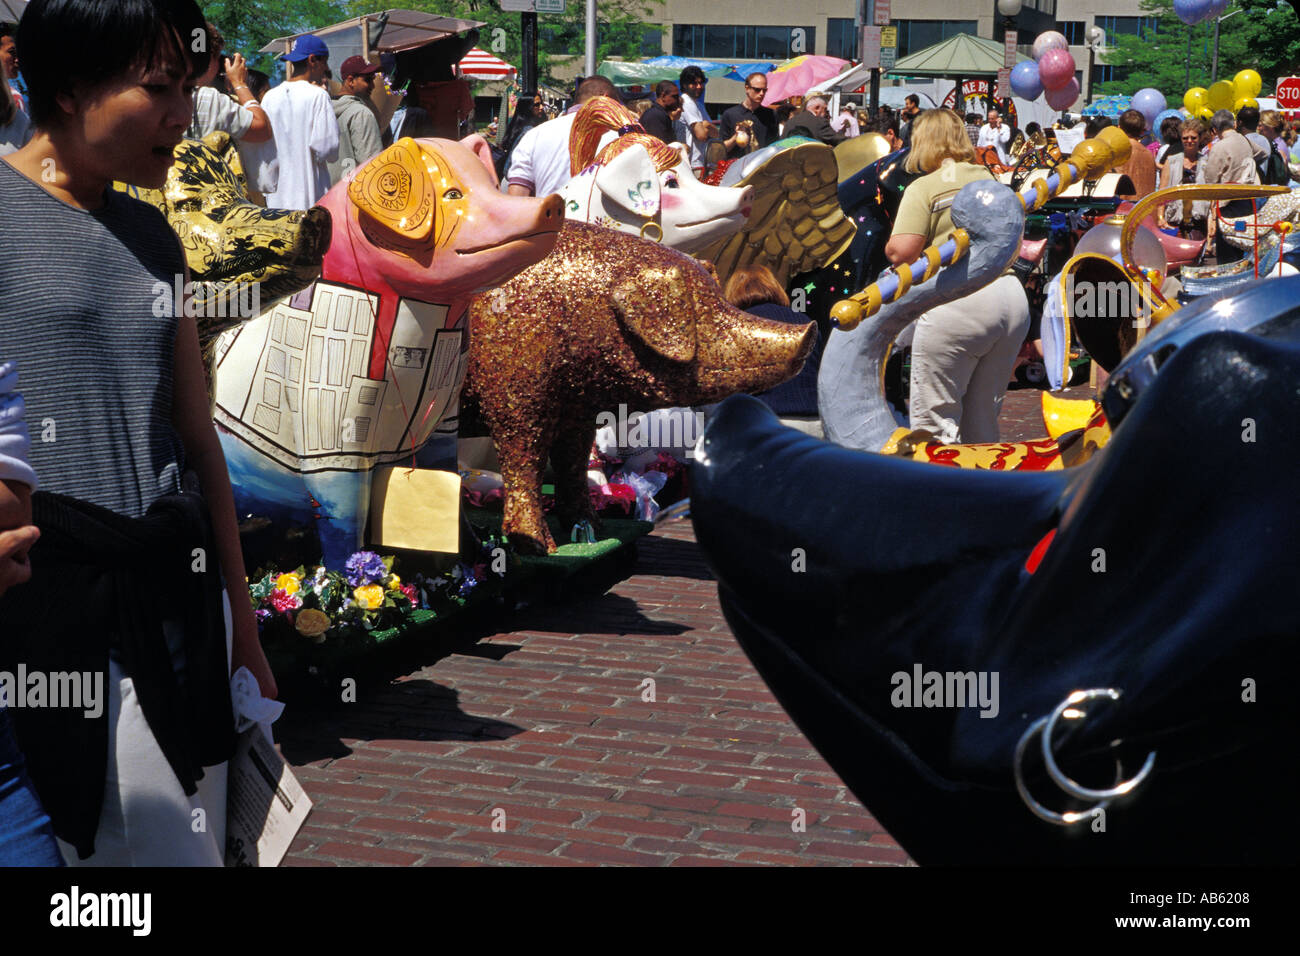 Sculptures de Porcs Porcs alignés pour la parade sur le marché de Pike Place événement de collecte de fonds au Seattle Washington USA Banque D'Images